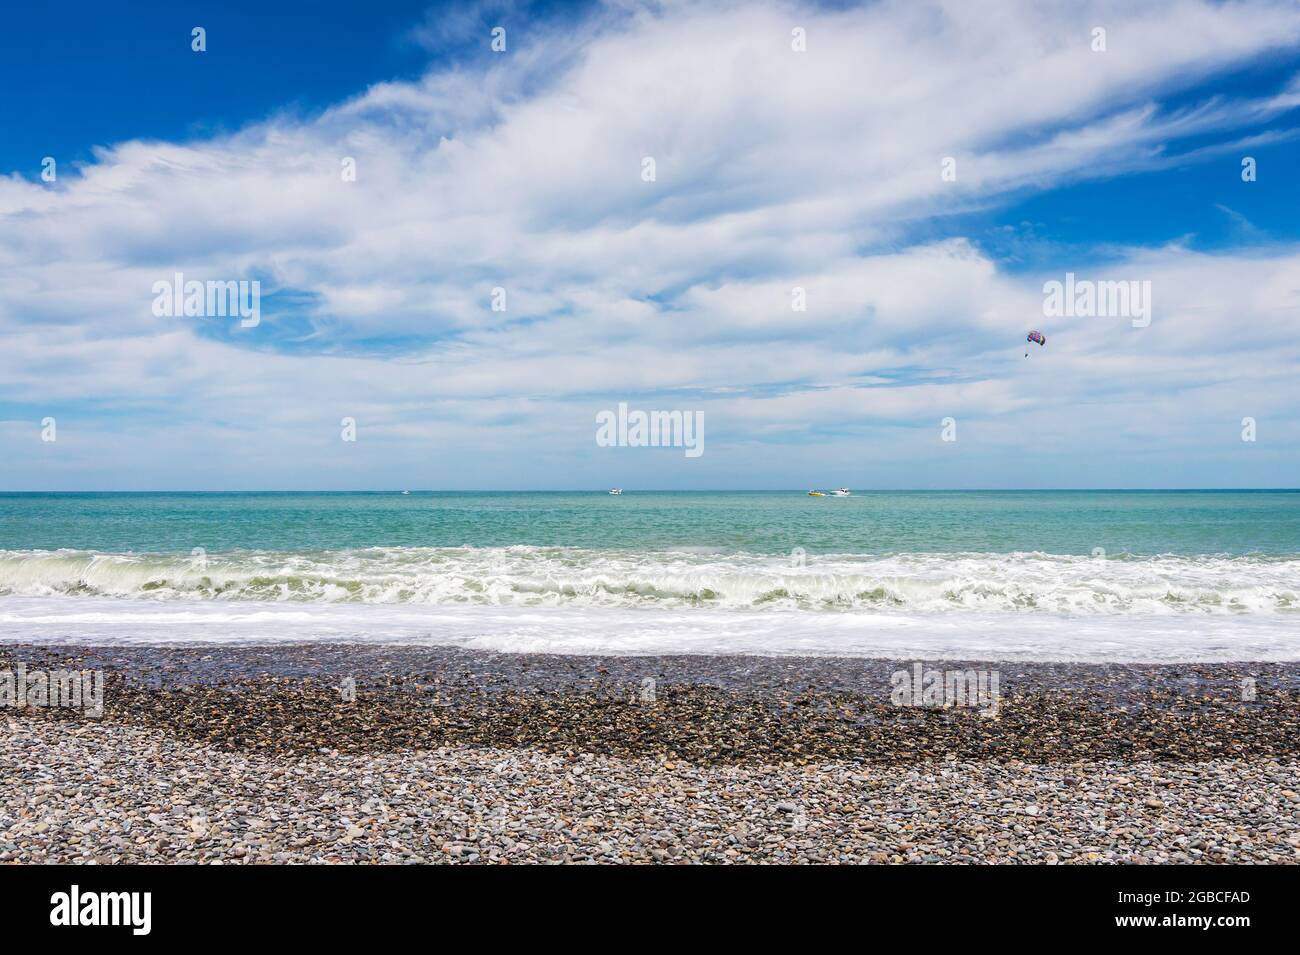 Bellissima spiaggia di ciottoli vuota a Batumi, Georgia. Barca con parapendio. Estate brillante giorno di sole, acqua blu. Nessuna gente. Foto Stock